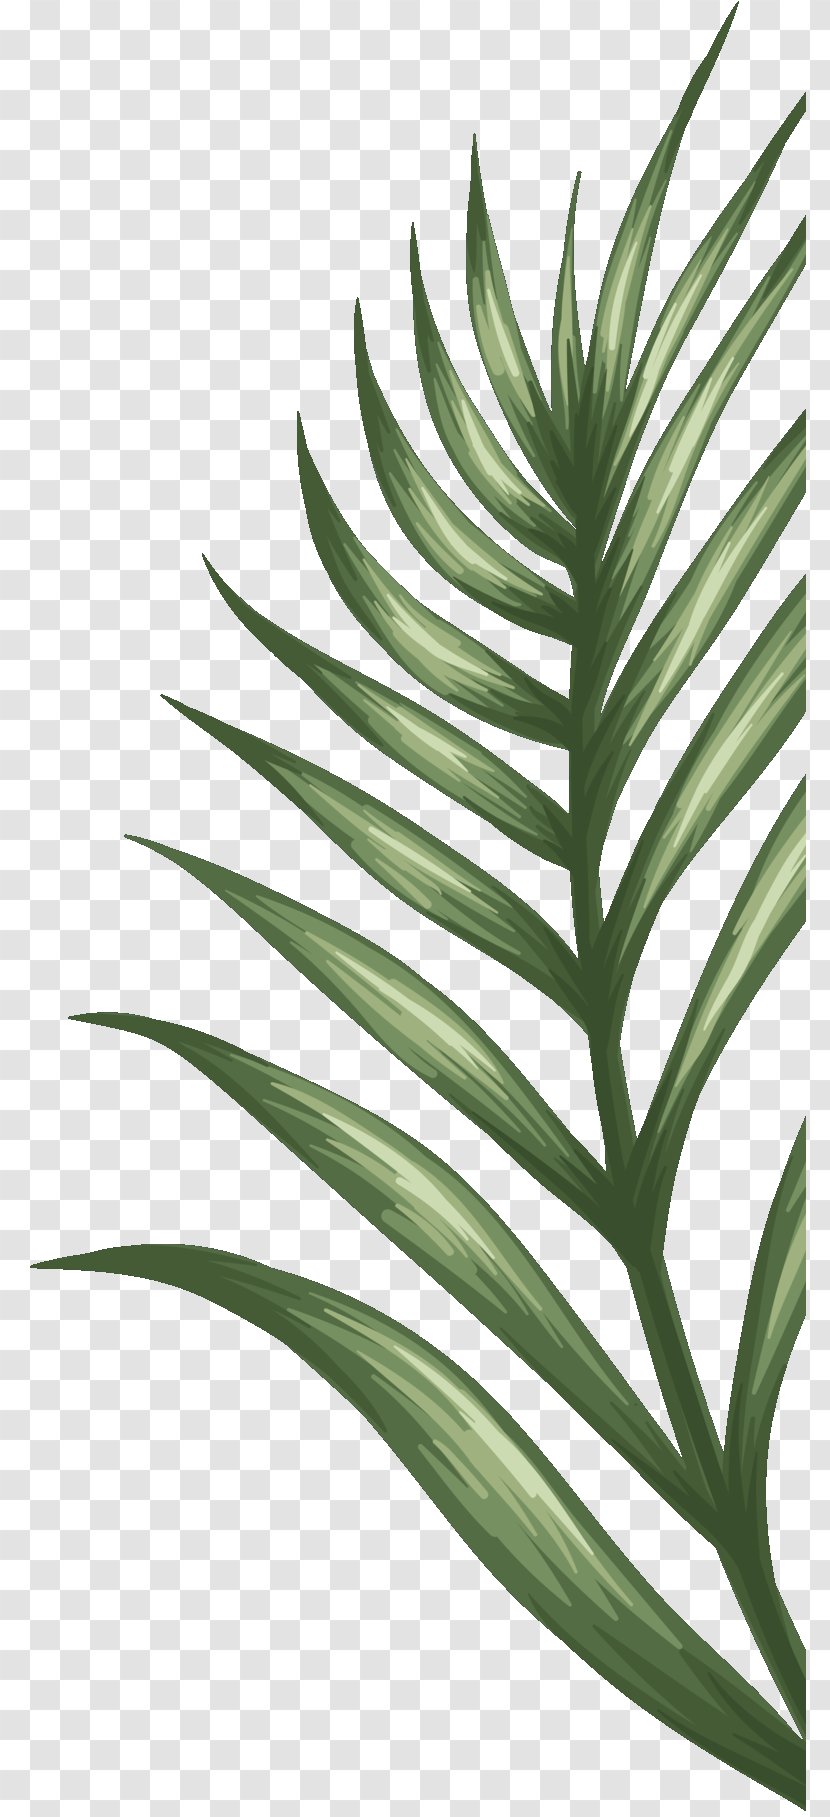 Palm Trees Plant Stem Leaf Terrestrial Plants - Botany Transparent PNG